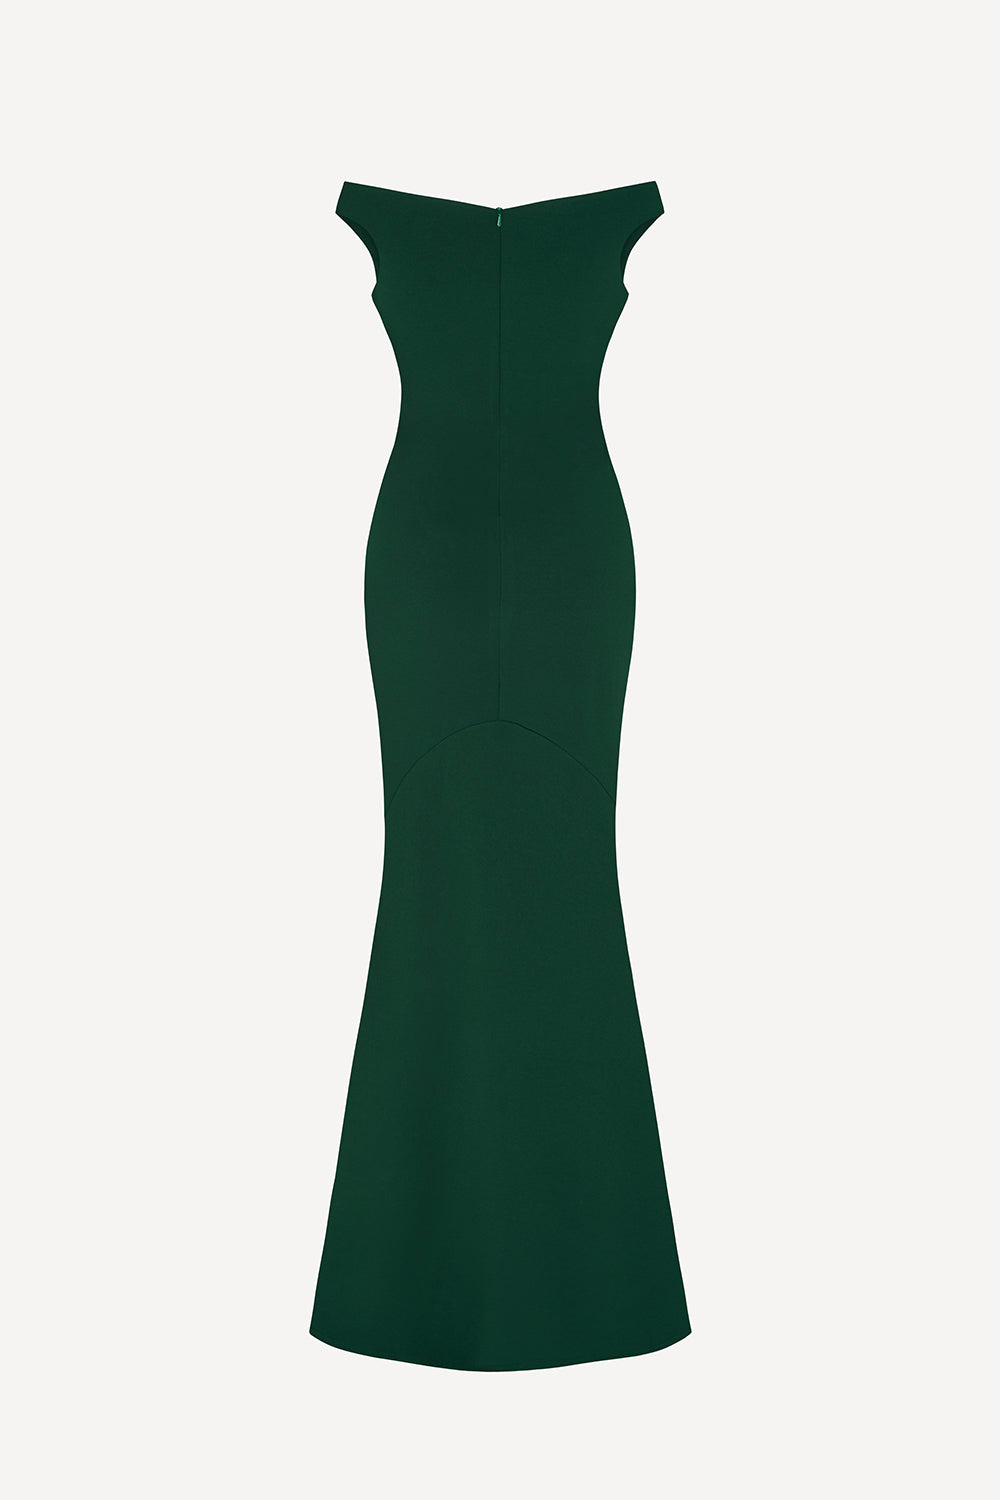 Bella gown in emerald